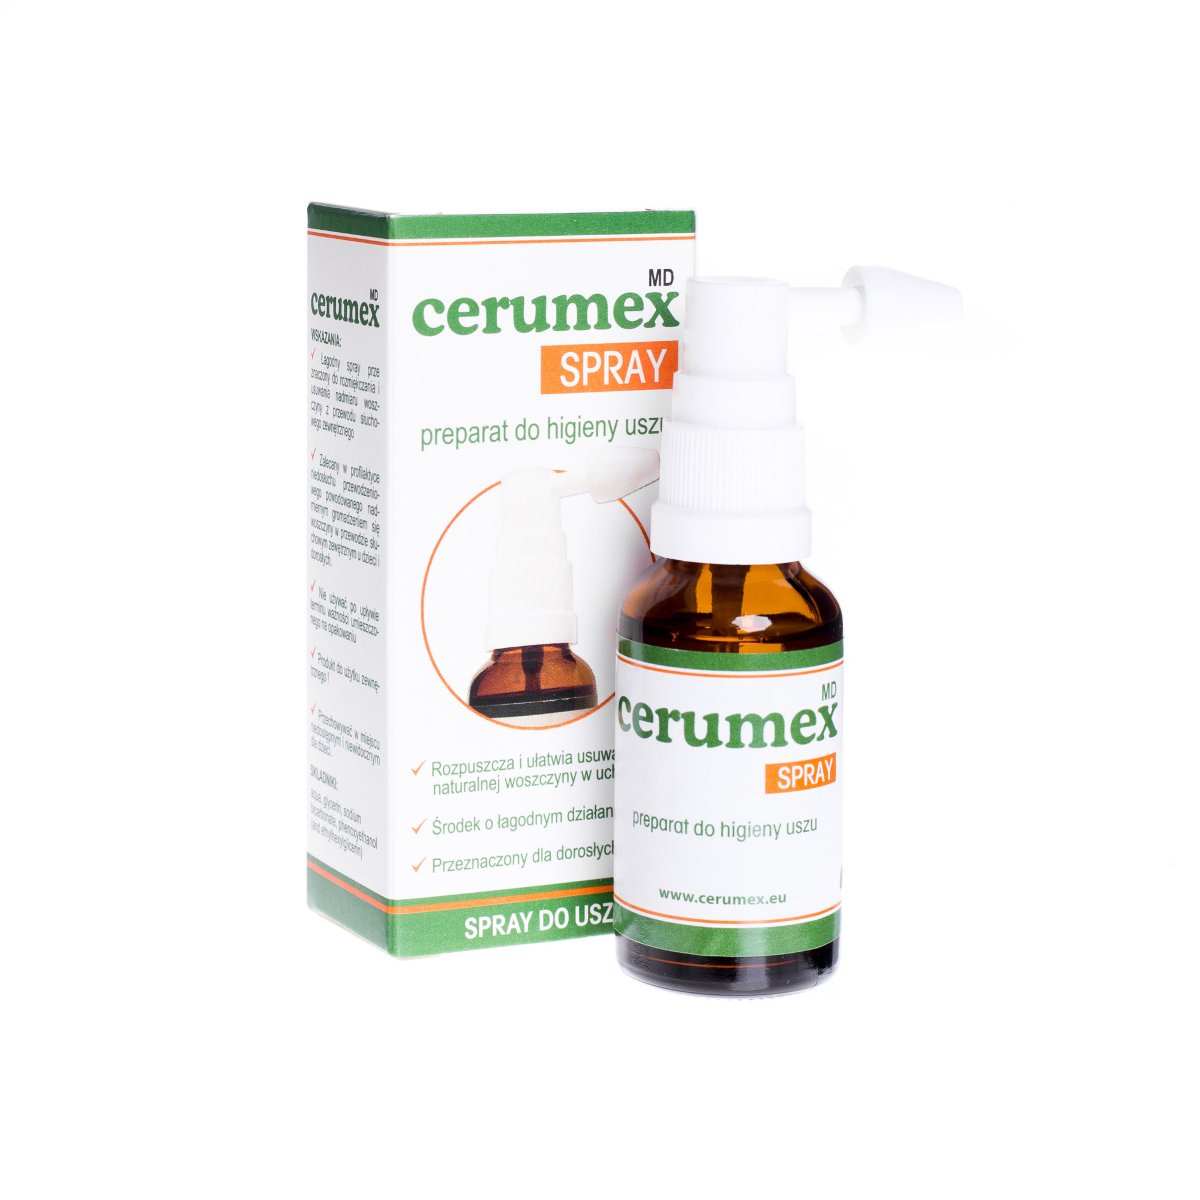 Cerumex MD Spray, preparat do higieny uszu, 30 ml |Darmowa dostawa od 199,99 zł !!!